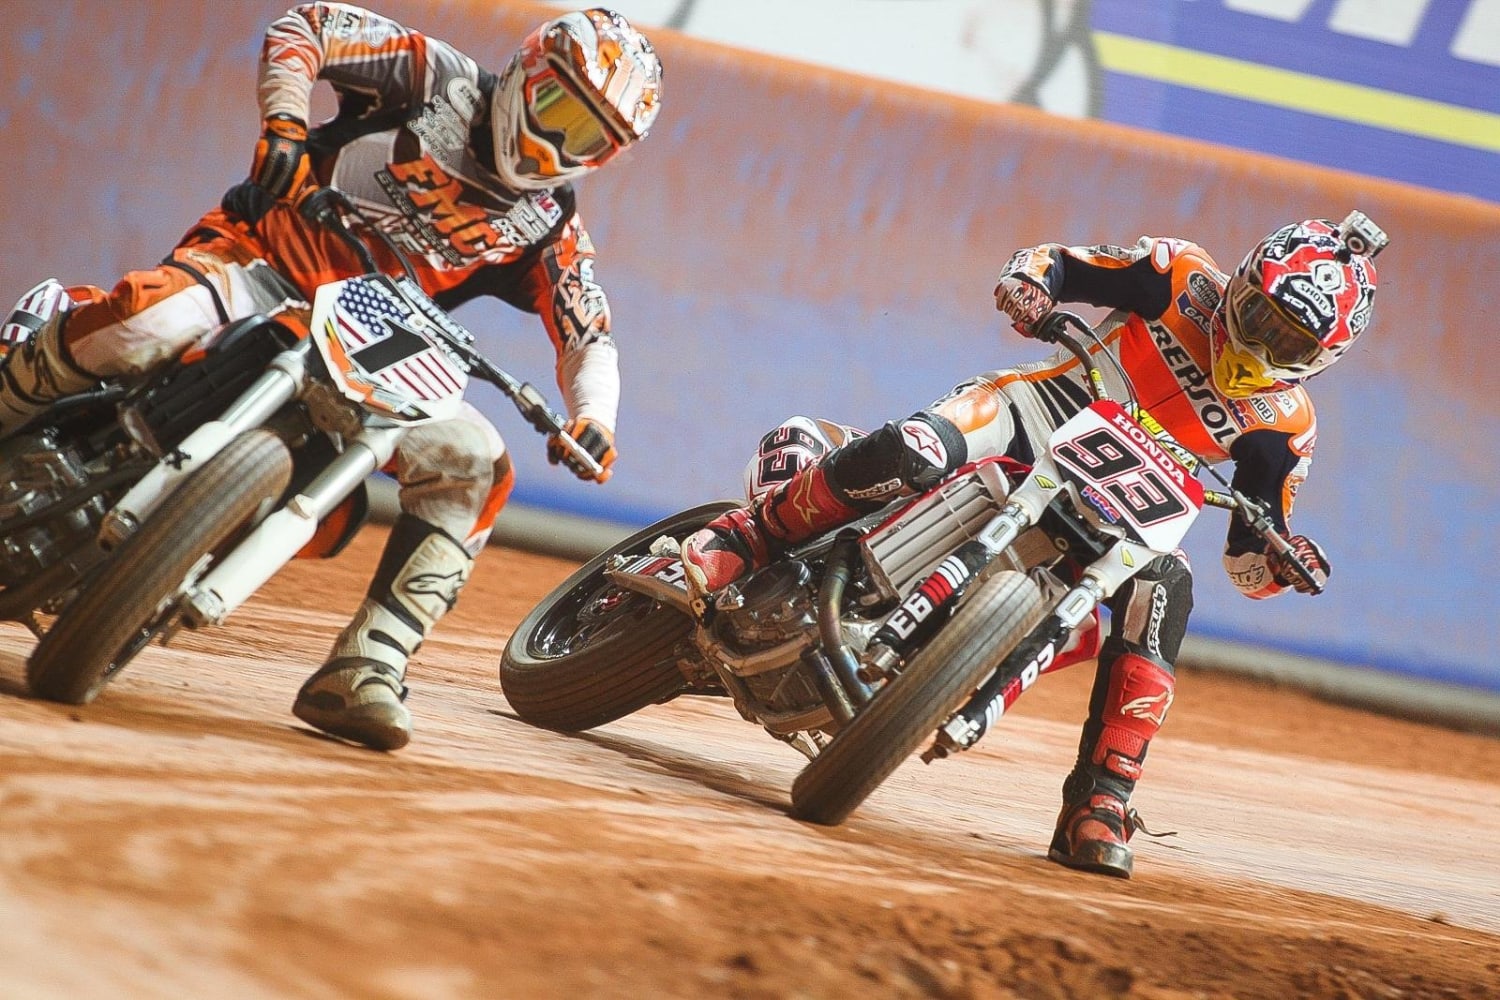 Motocicleta Profissional Rider Drives Over Do Motocross a Trilha